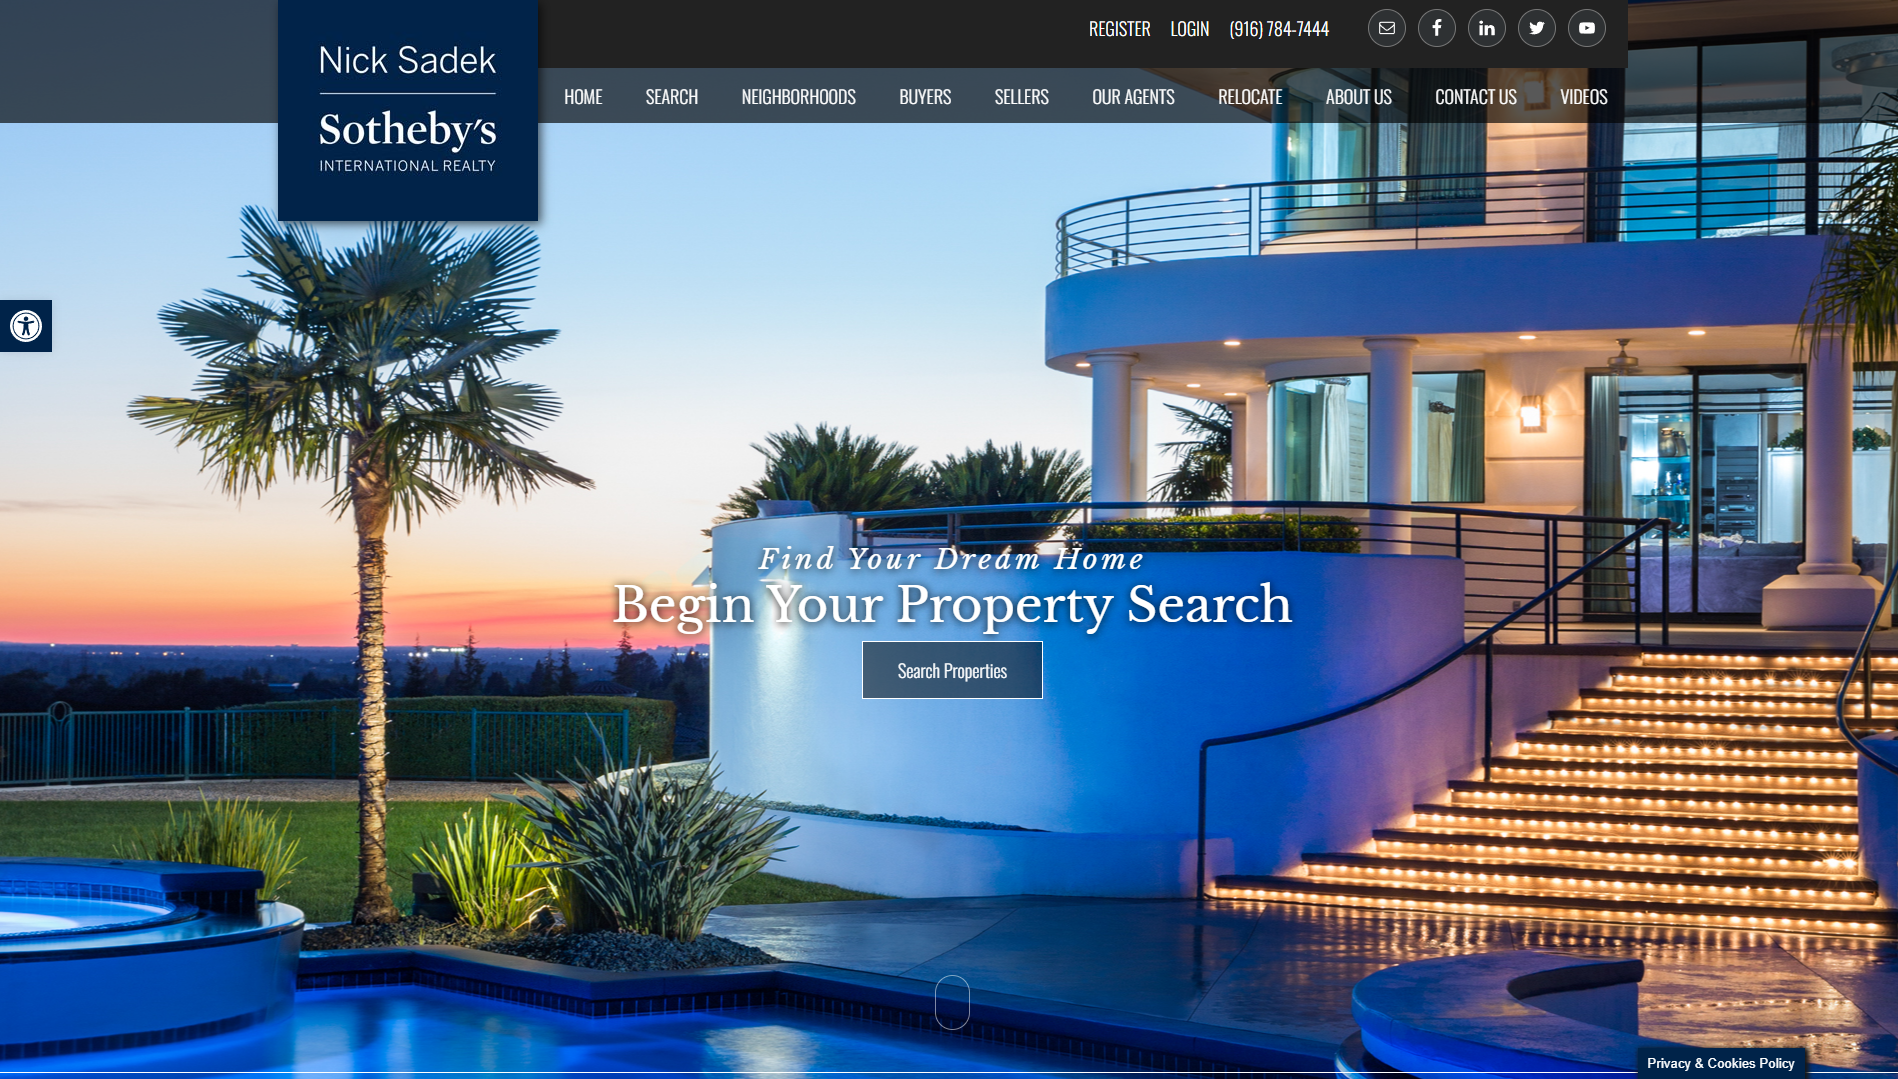 Sothebys Website Home Page